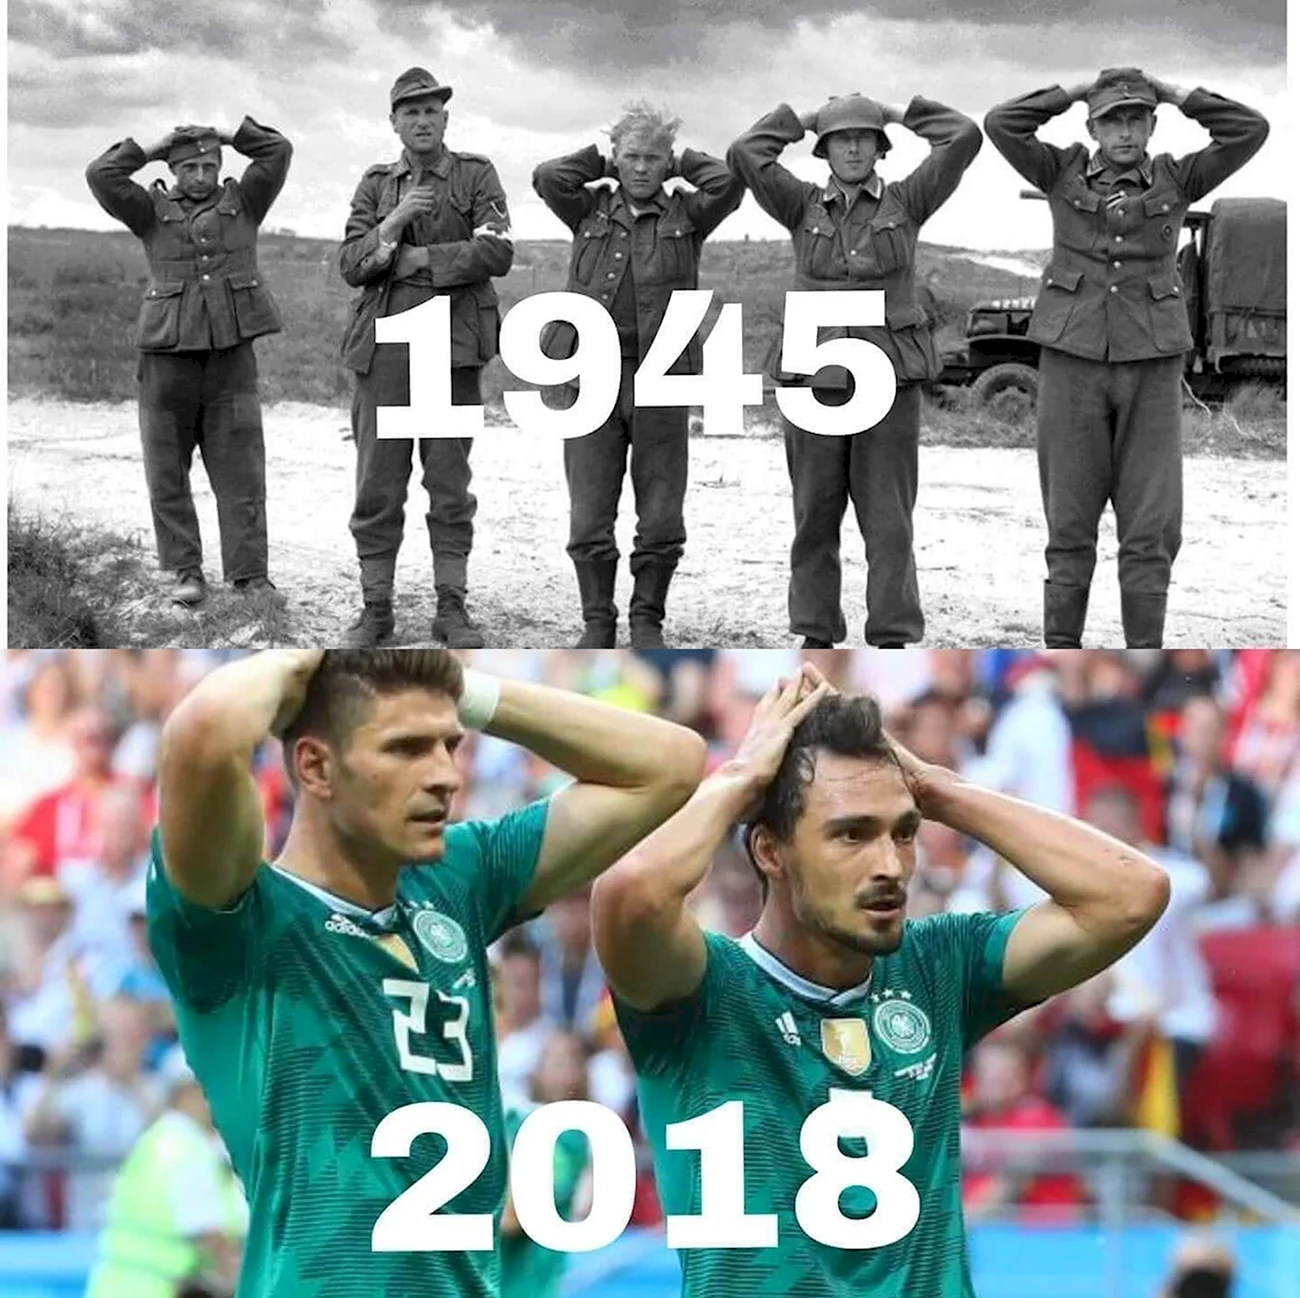 Чемпионат мира по футболу 2018 Германия. Прикольная картинка